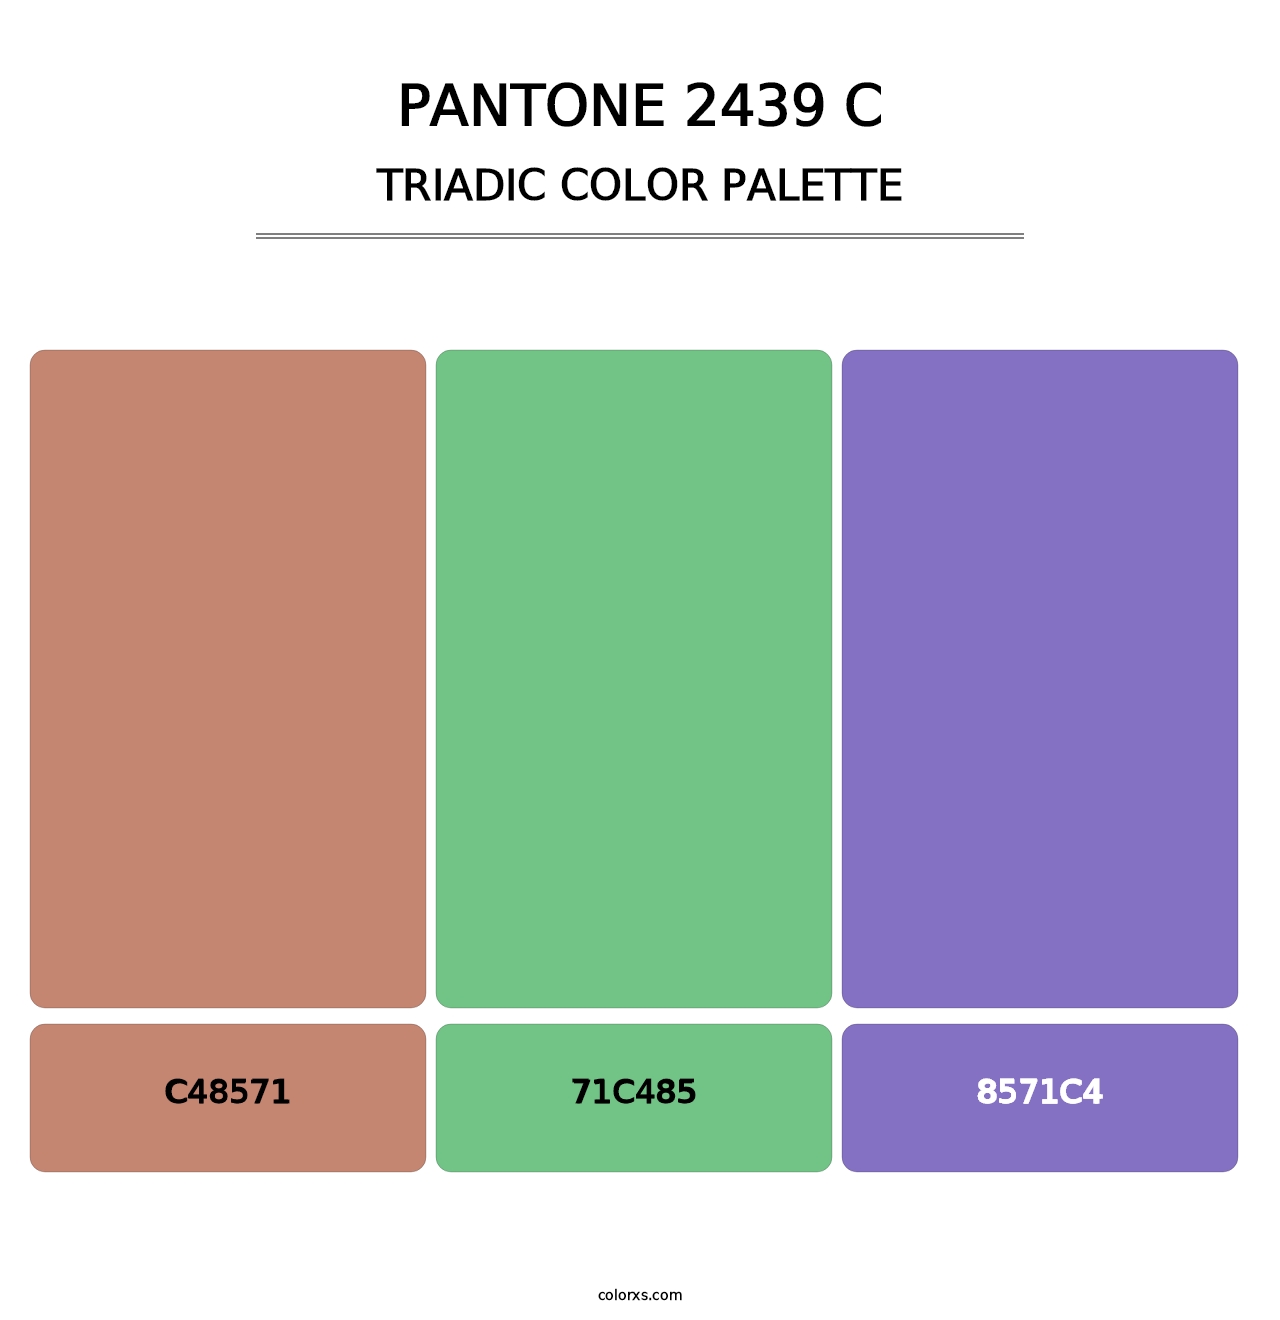 PANTONE 2439 C - Triadic Color Palette